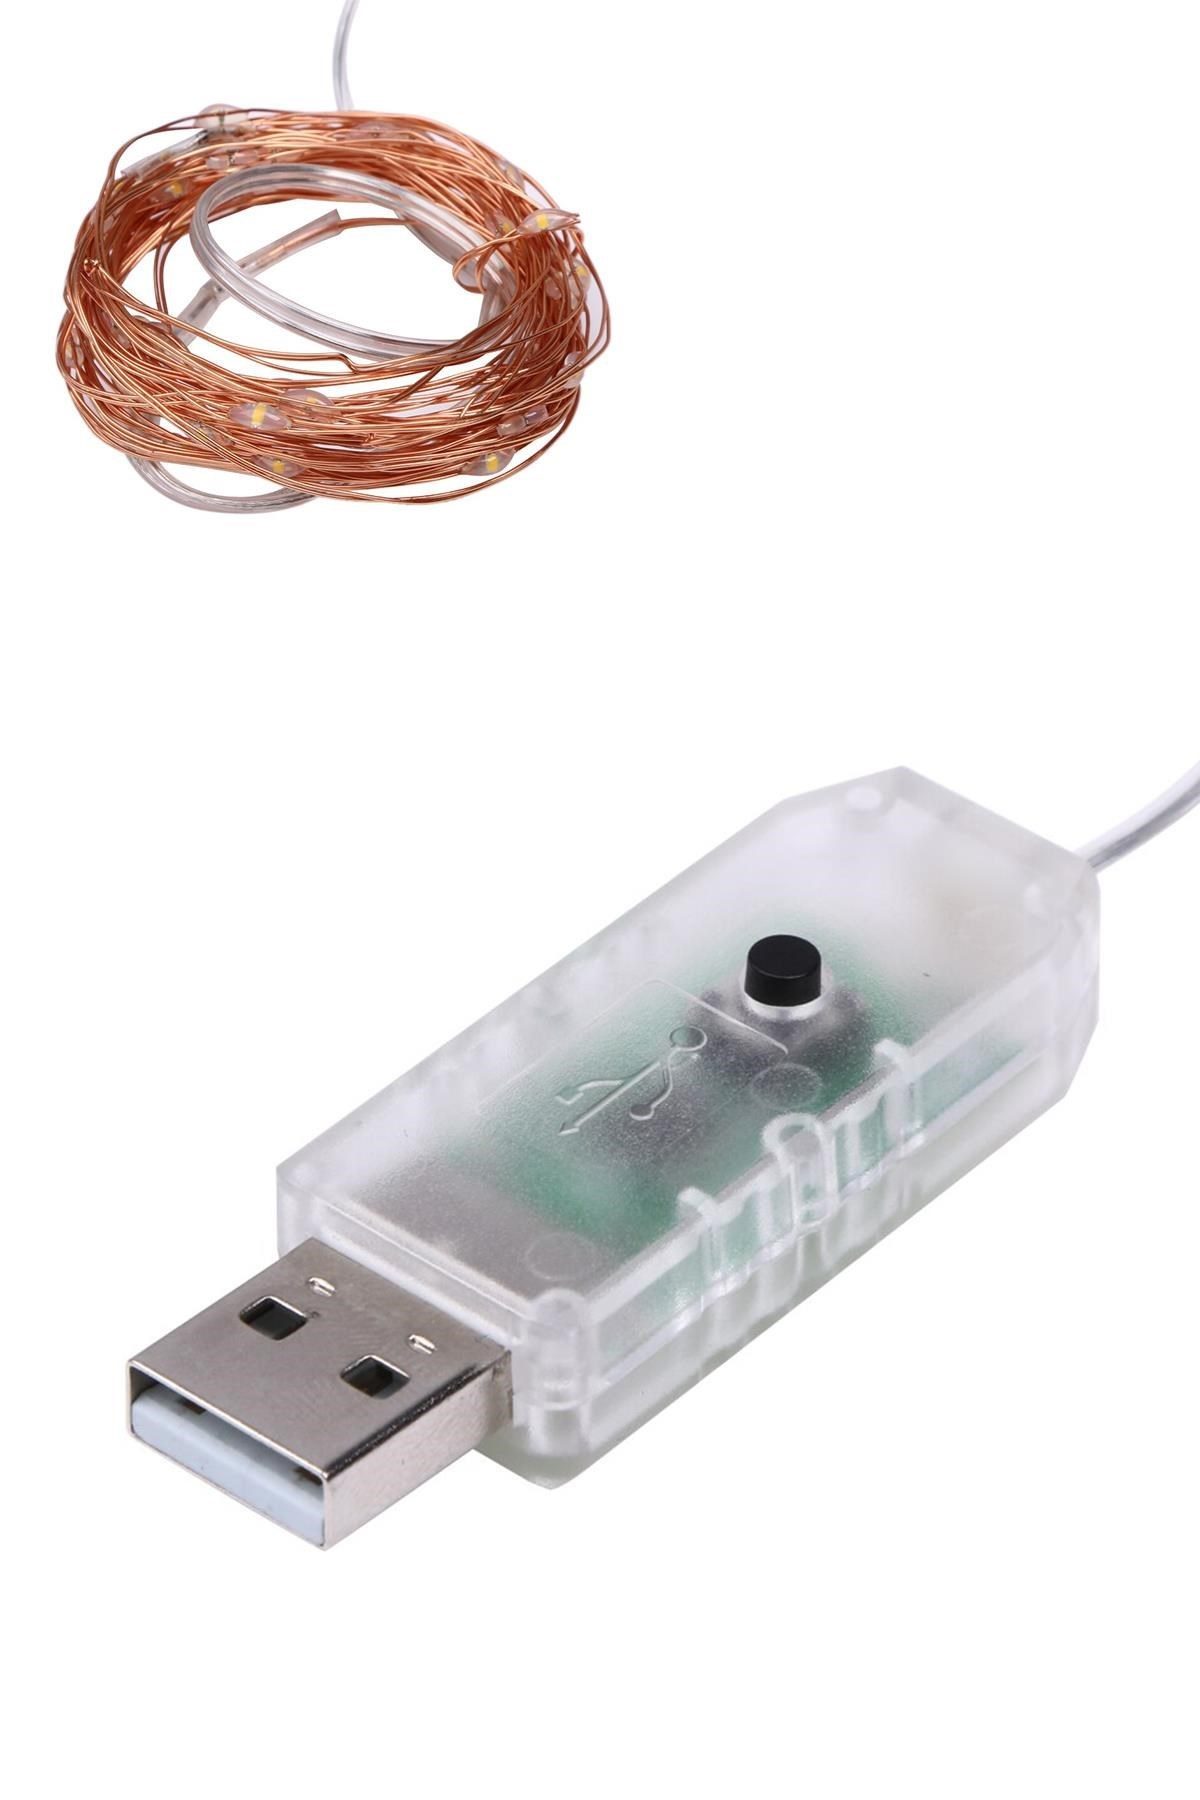 CLZ192 Yılbaşı ve Özel Konsept Dekorasyon 5 Mt USB Bağlantılı Led Işık (4172)